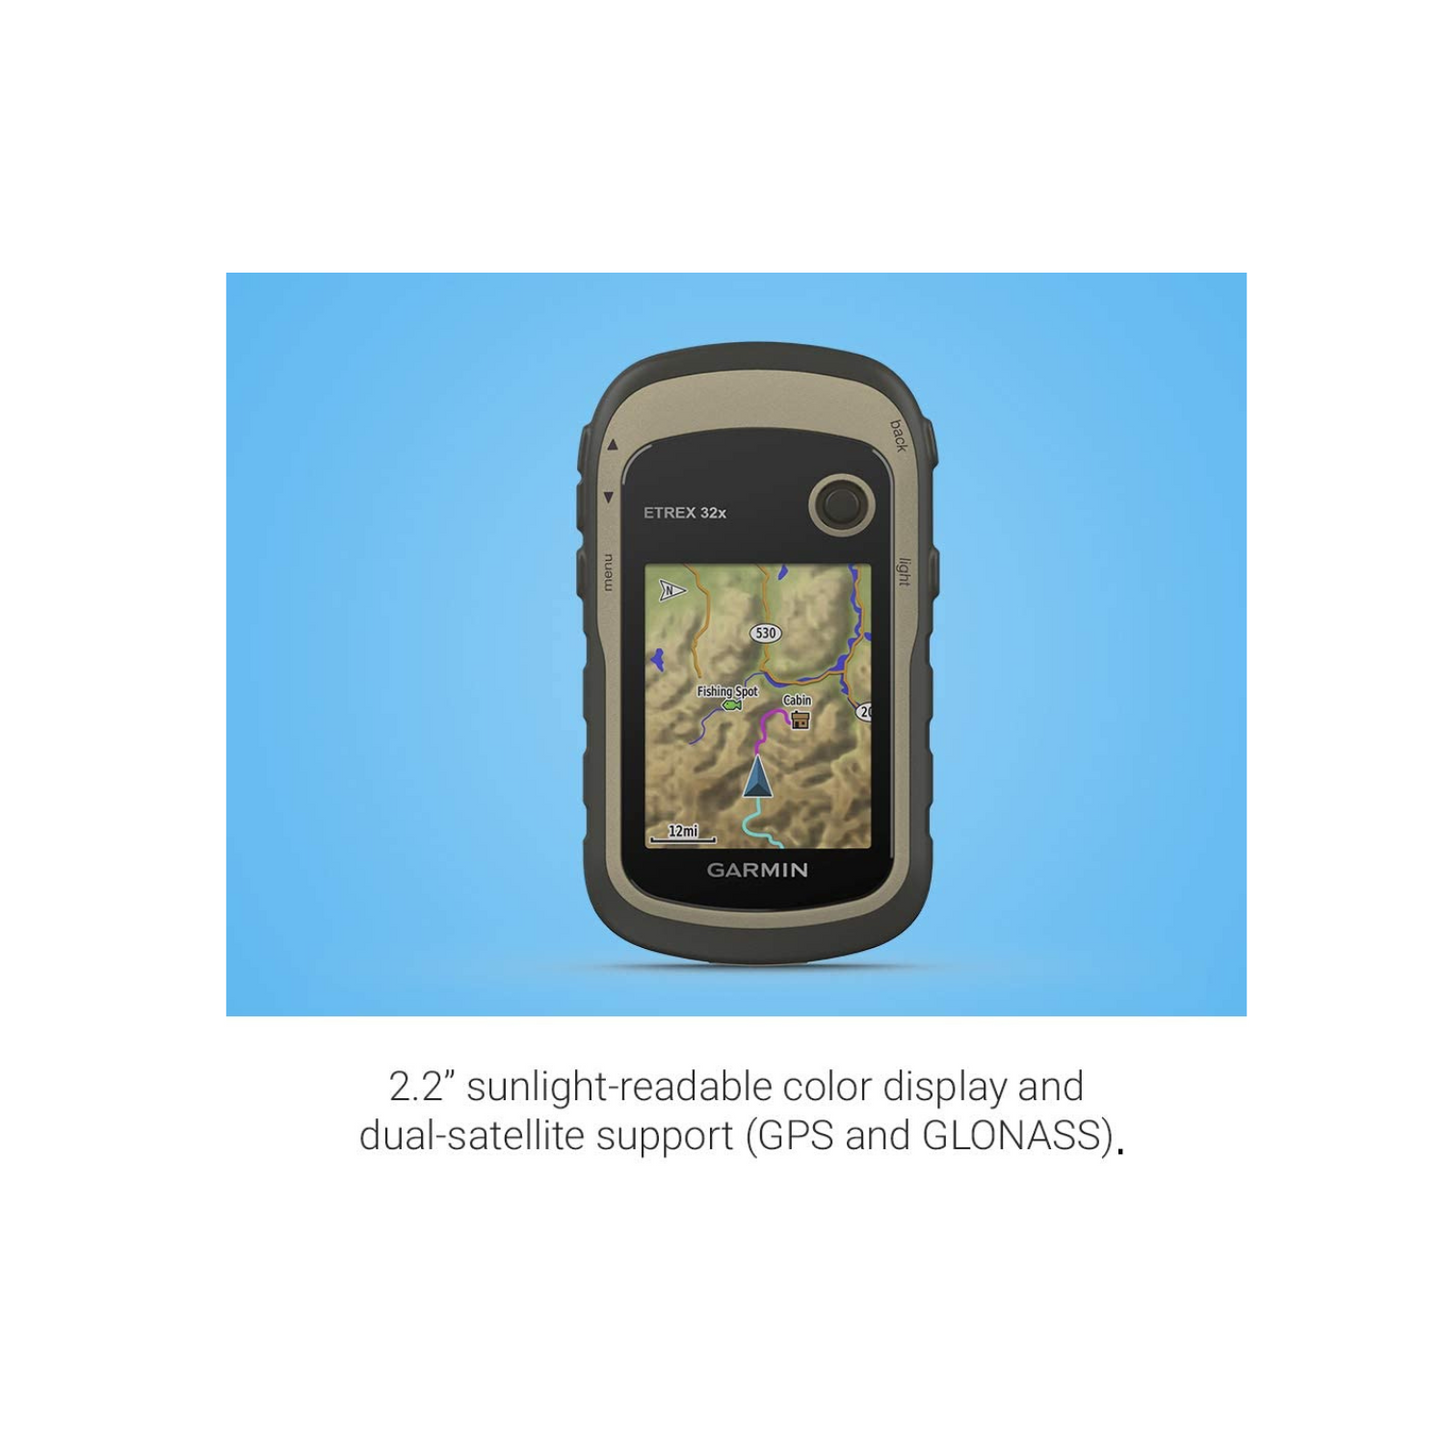 Garmin Etrex 32x, Rugged Handheld GPS Navigator